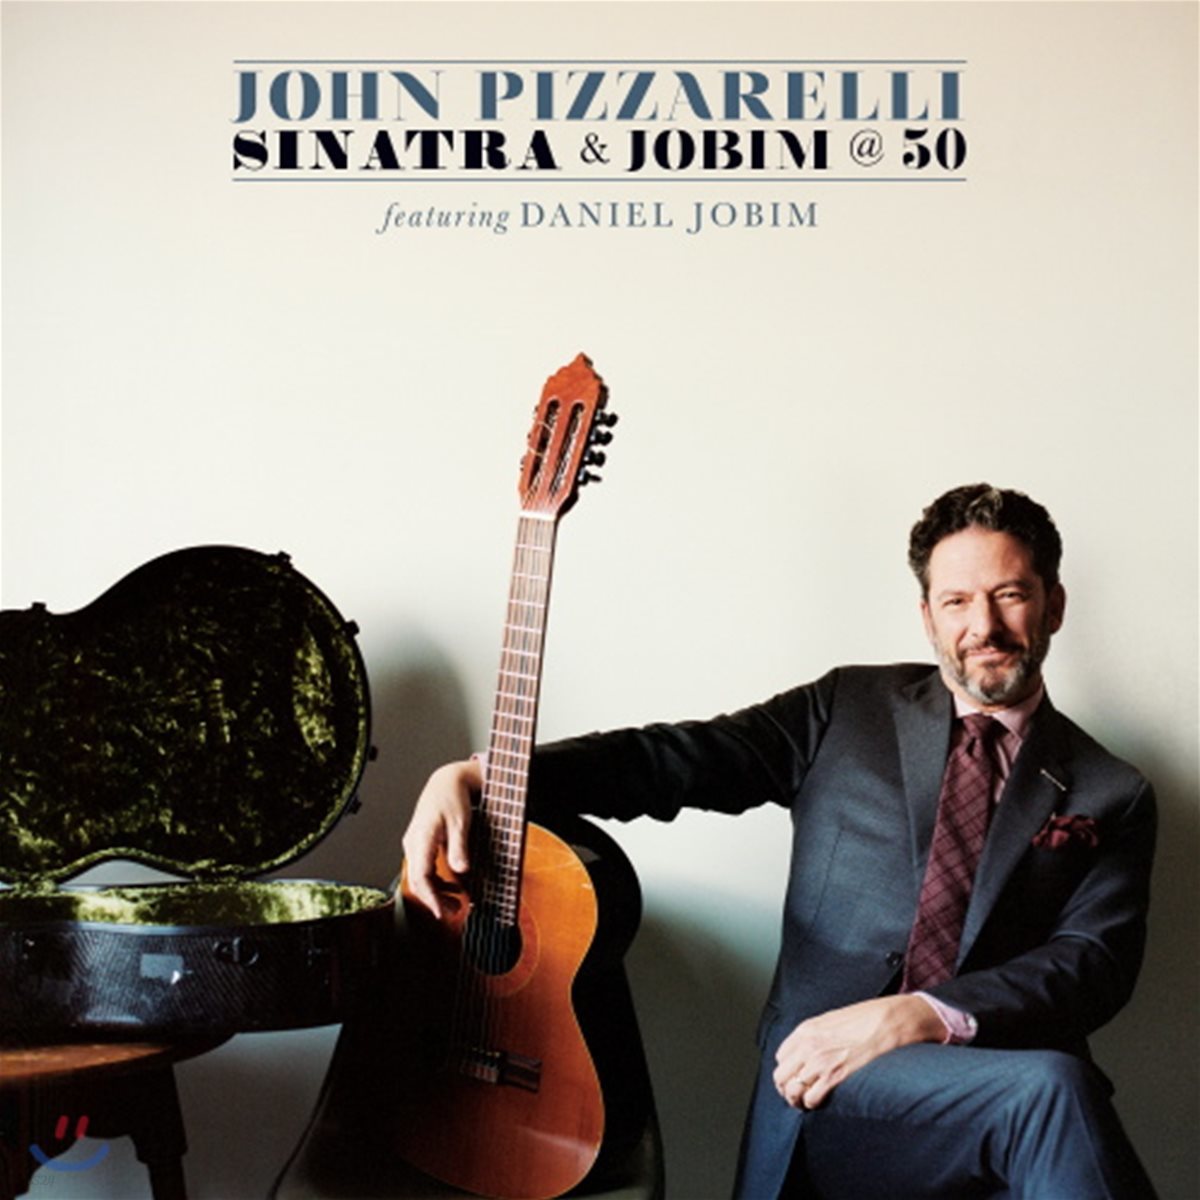 John Pizzarelli / Daniel Jobim (존 피자렐리 & 다니엘 조빔) - Sinatra & Jobim At 50